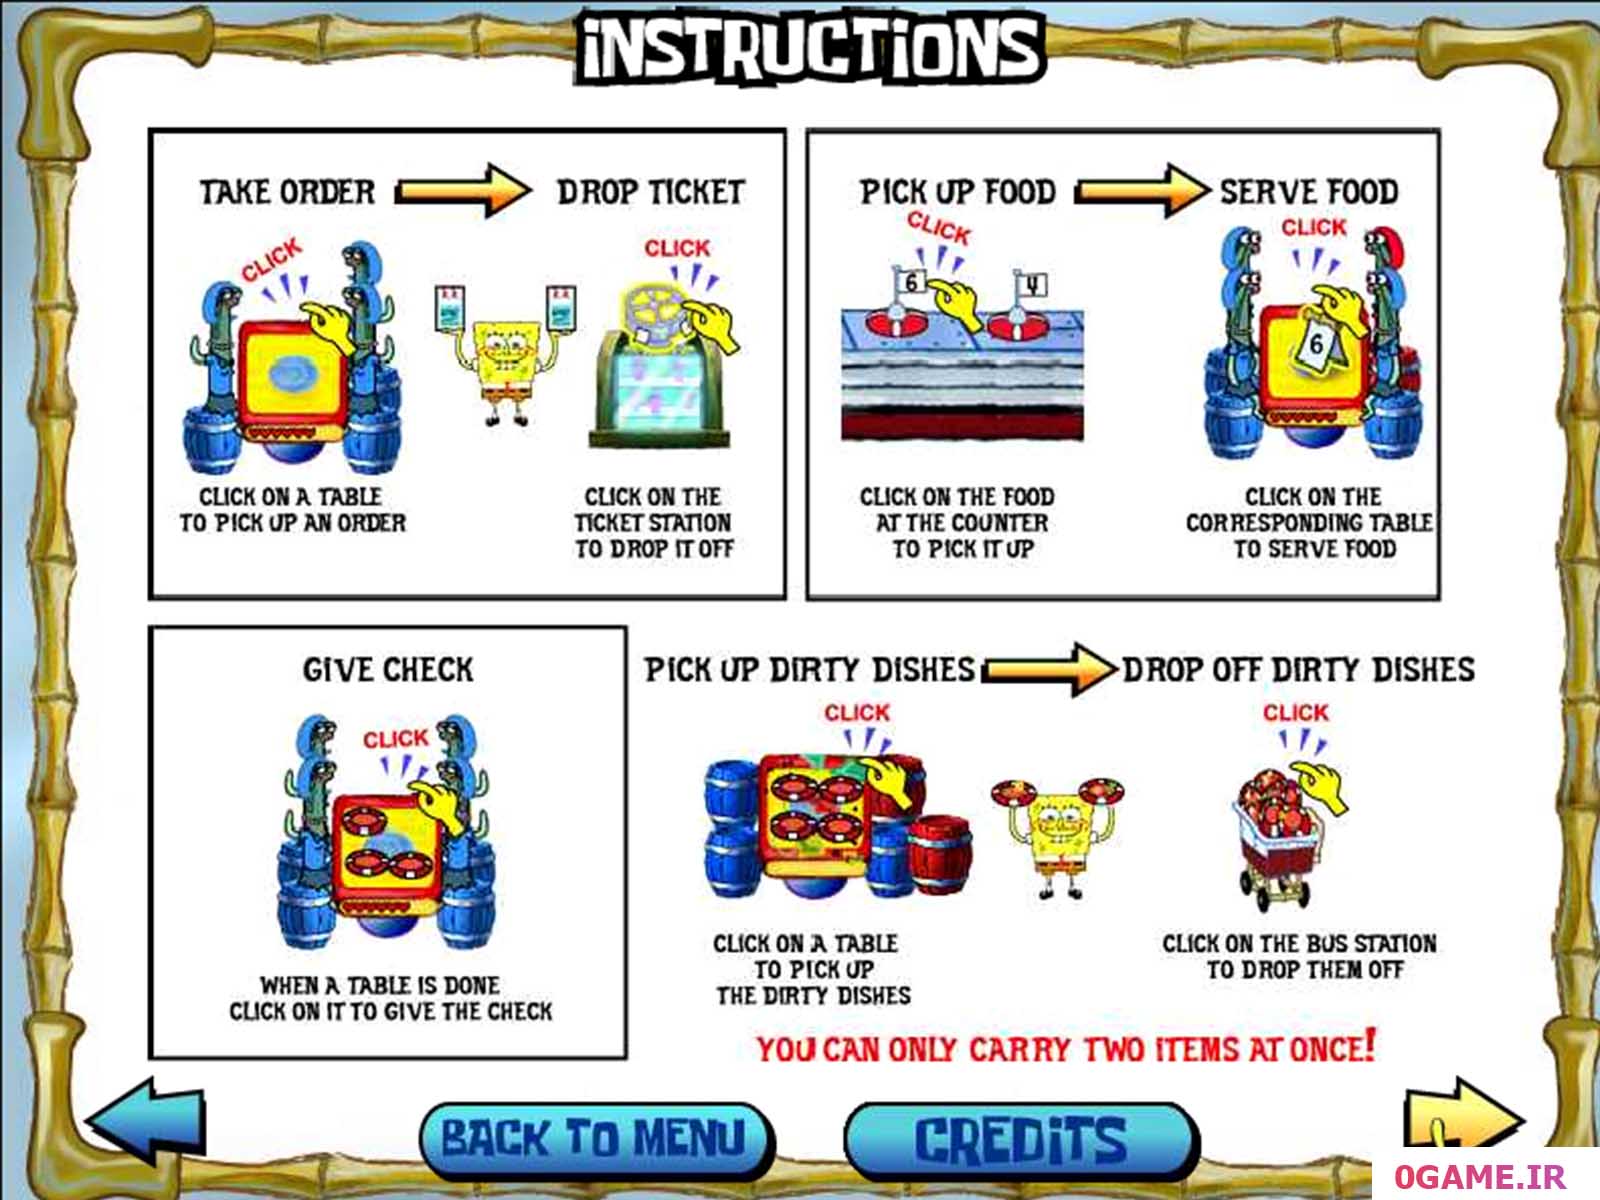 دانلود بازی SpongeBob Diner Dash نسخه کامل برای کامپیوتر